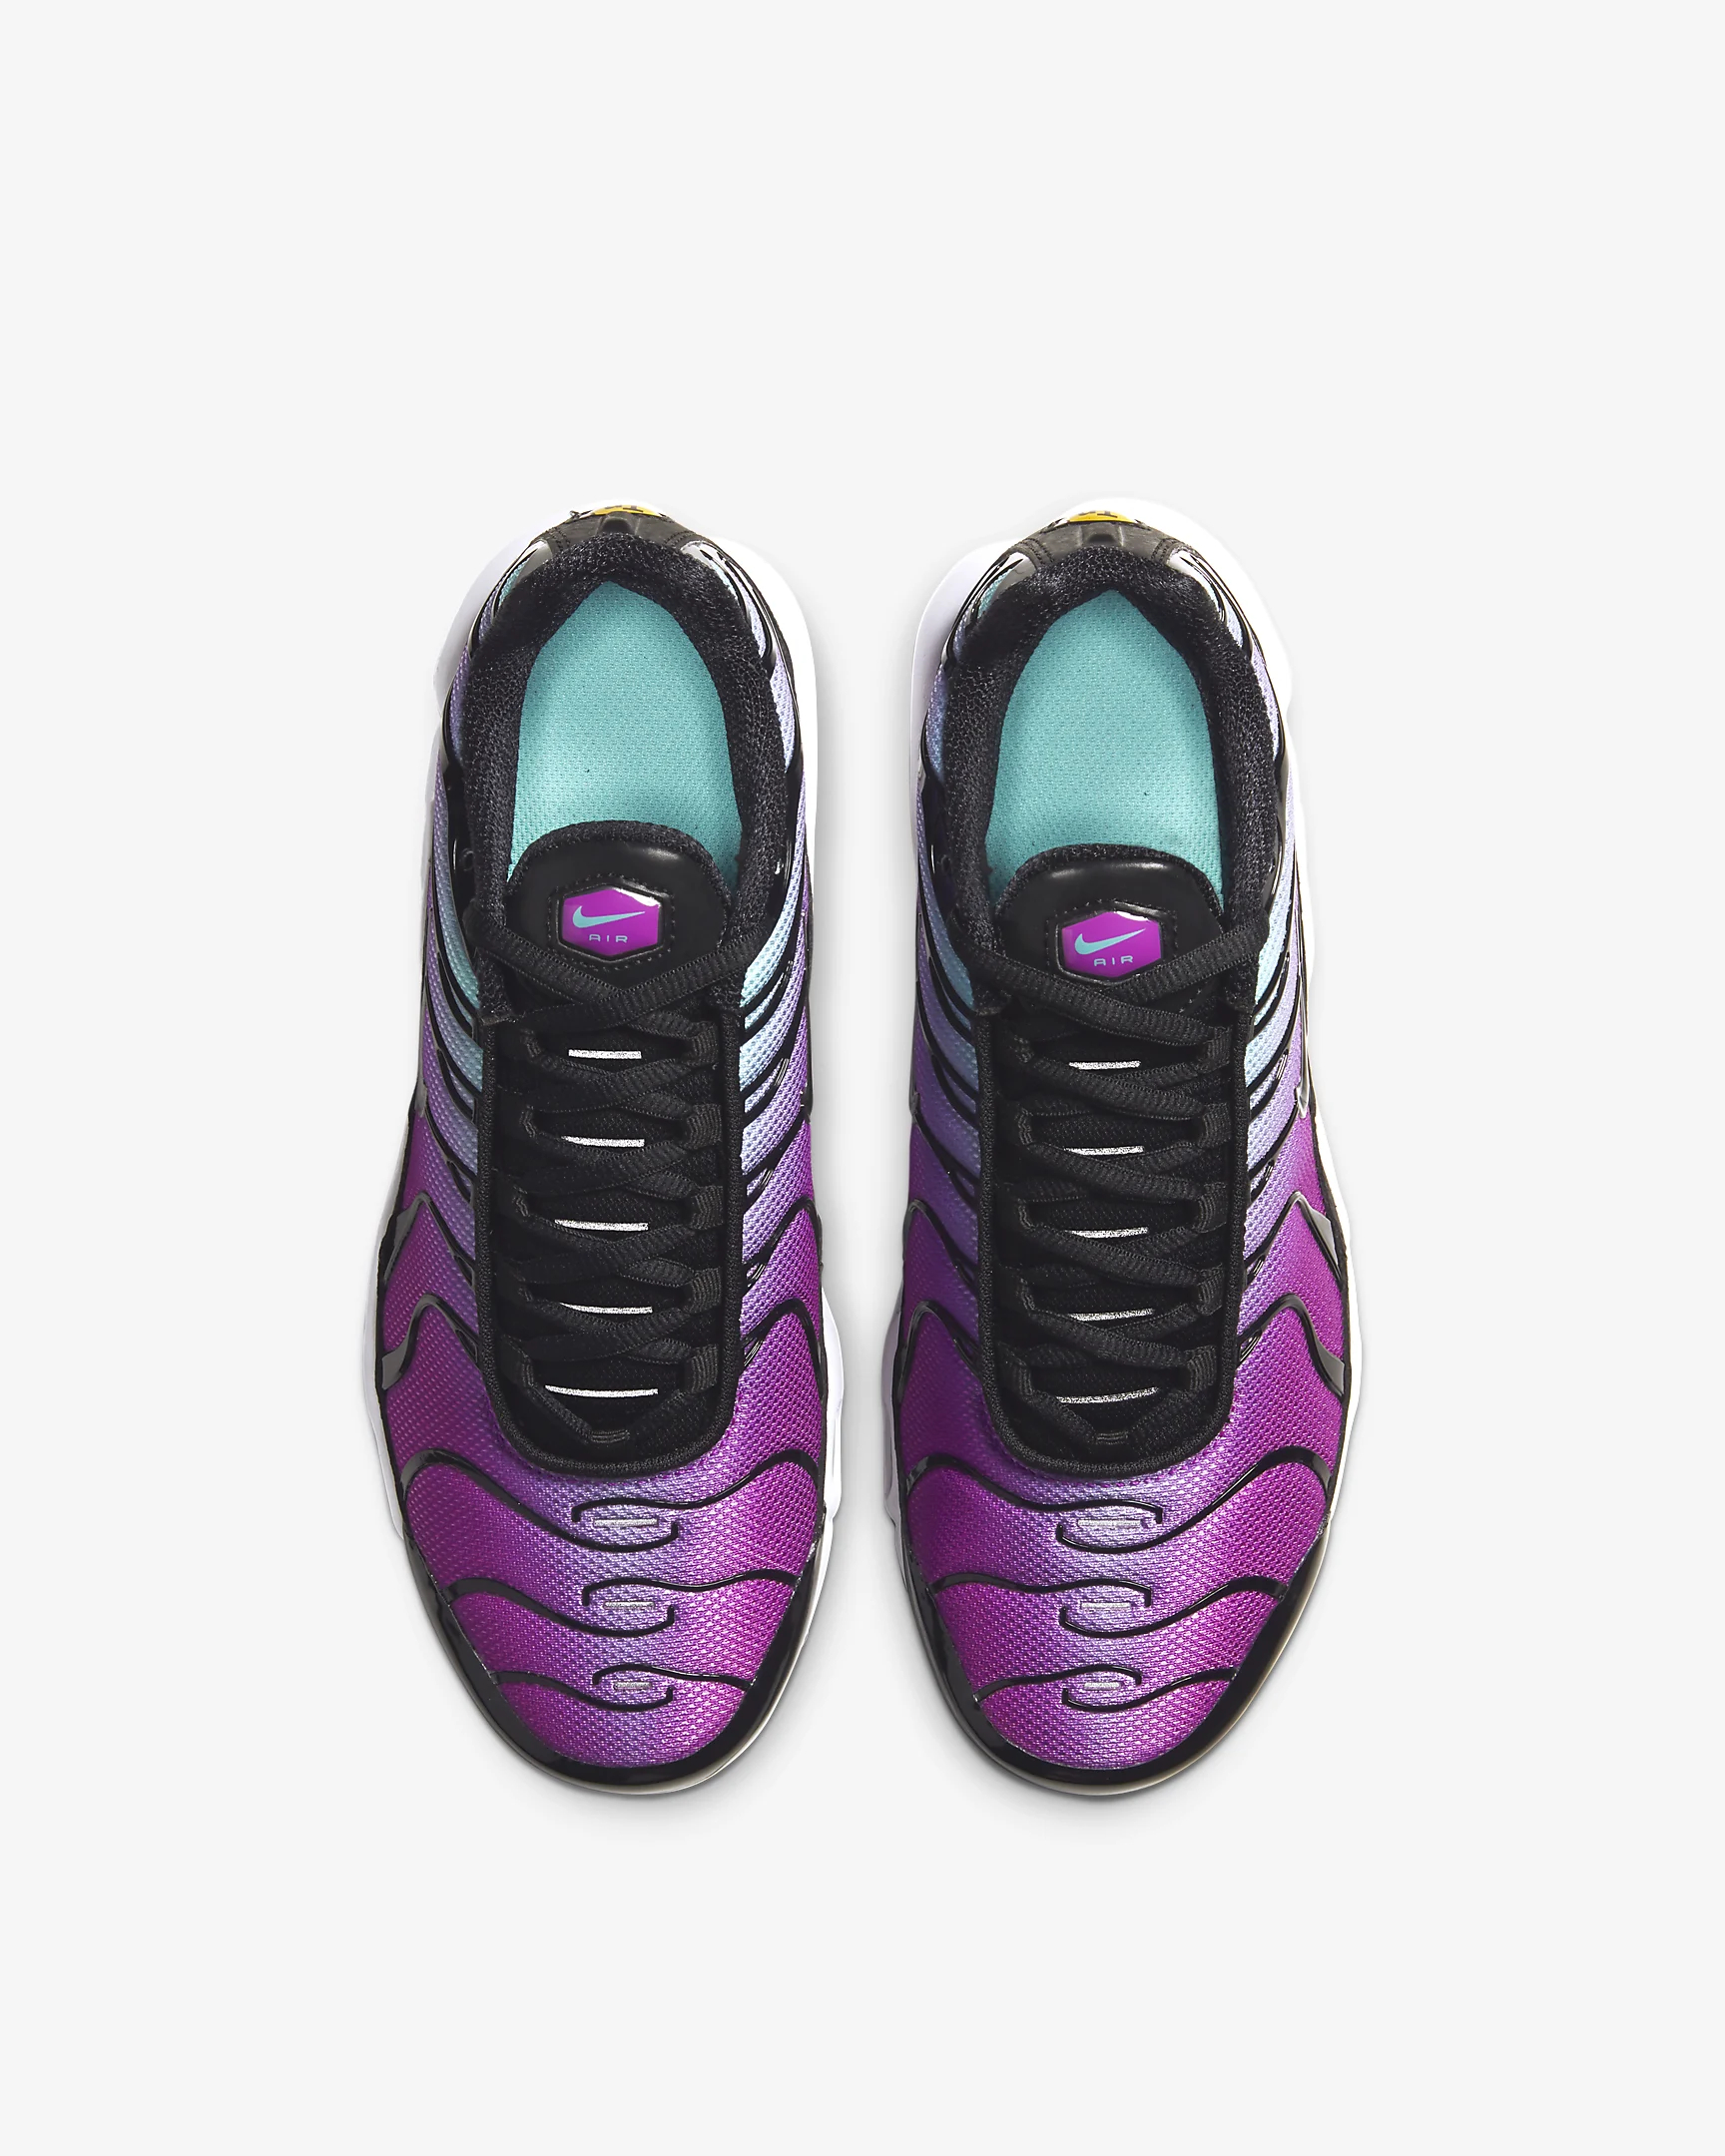 La Nike Air Max Plus TN Hyper Violet est dès à présent disponible